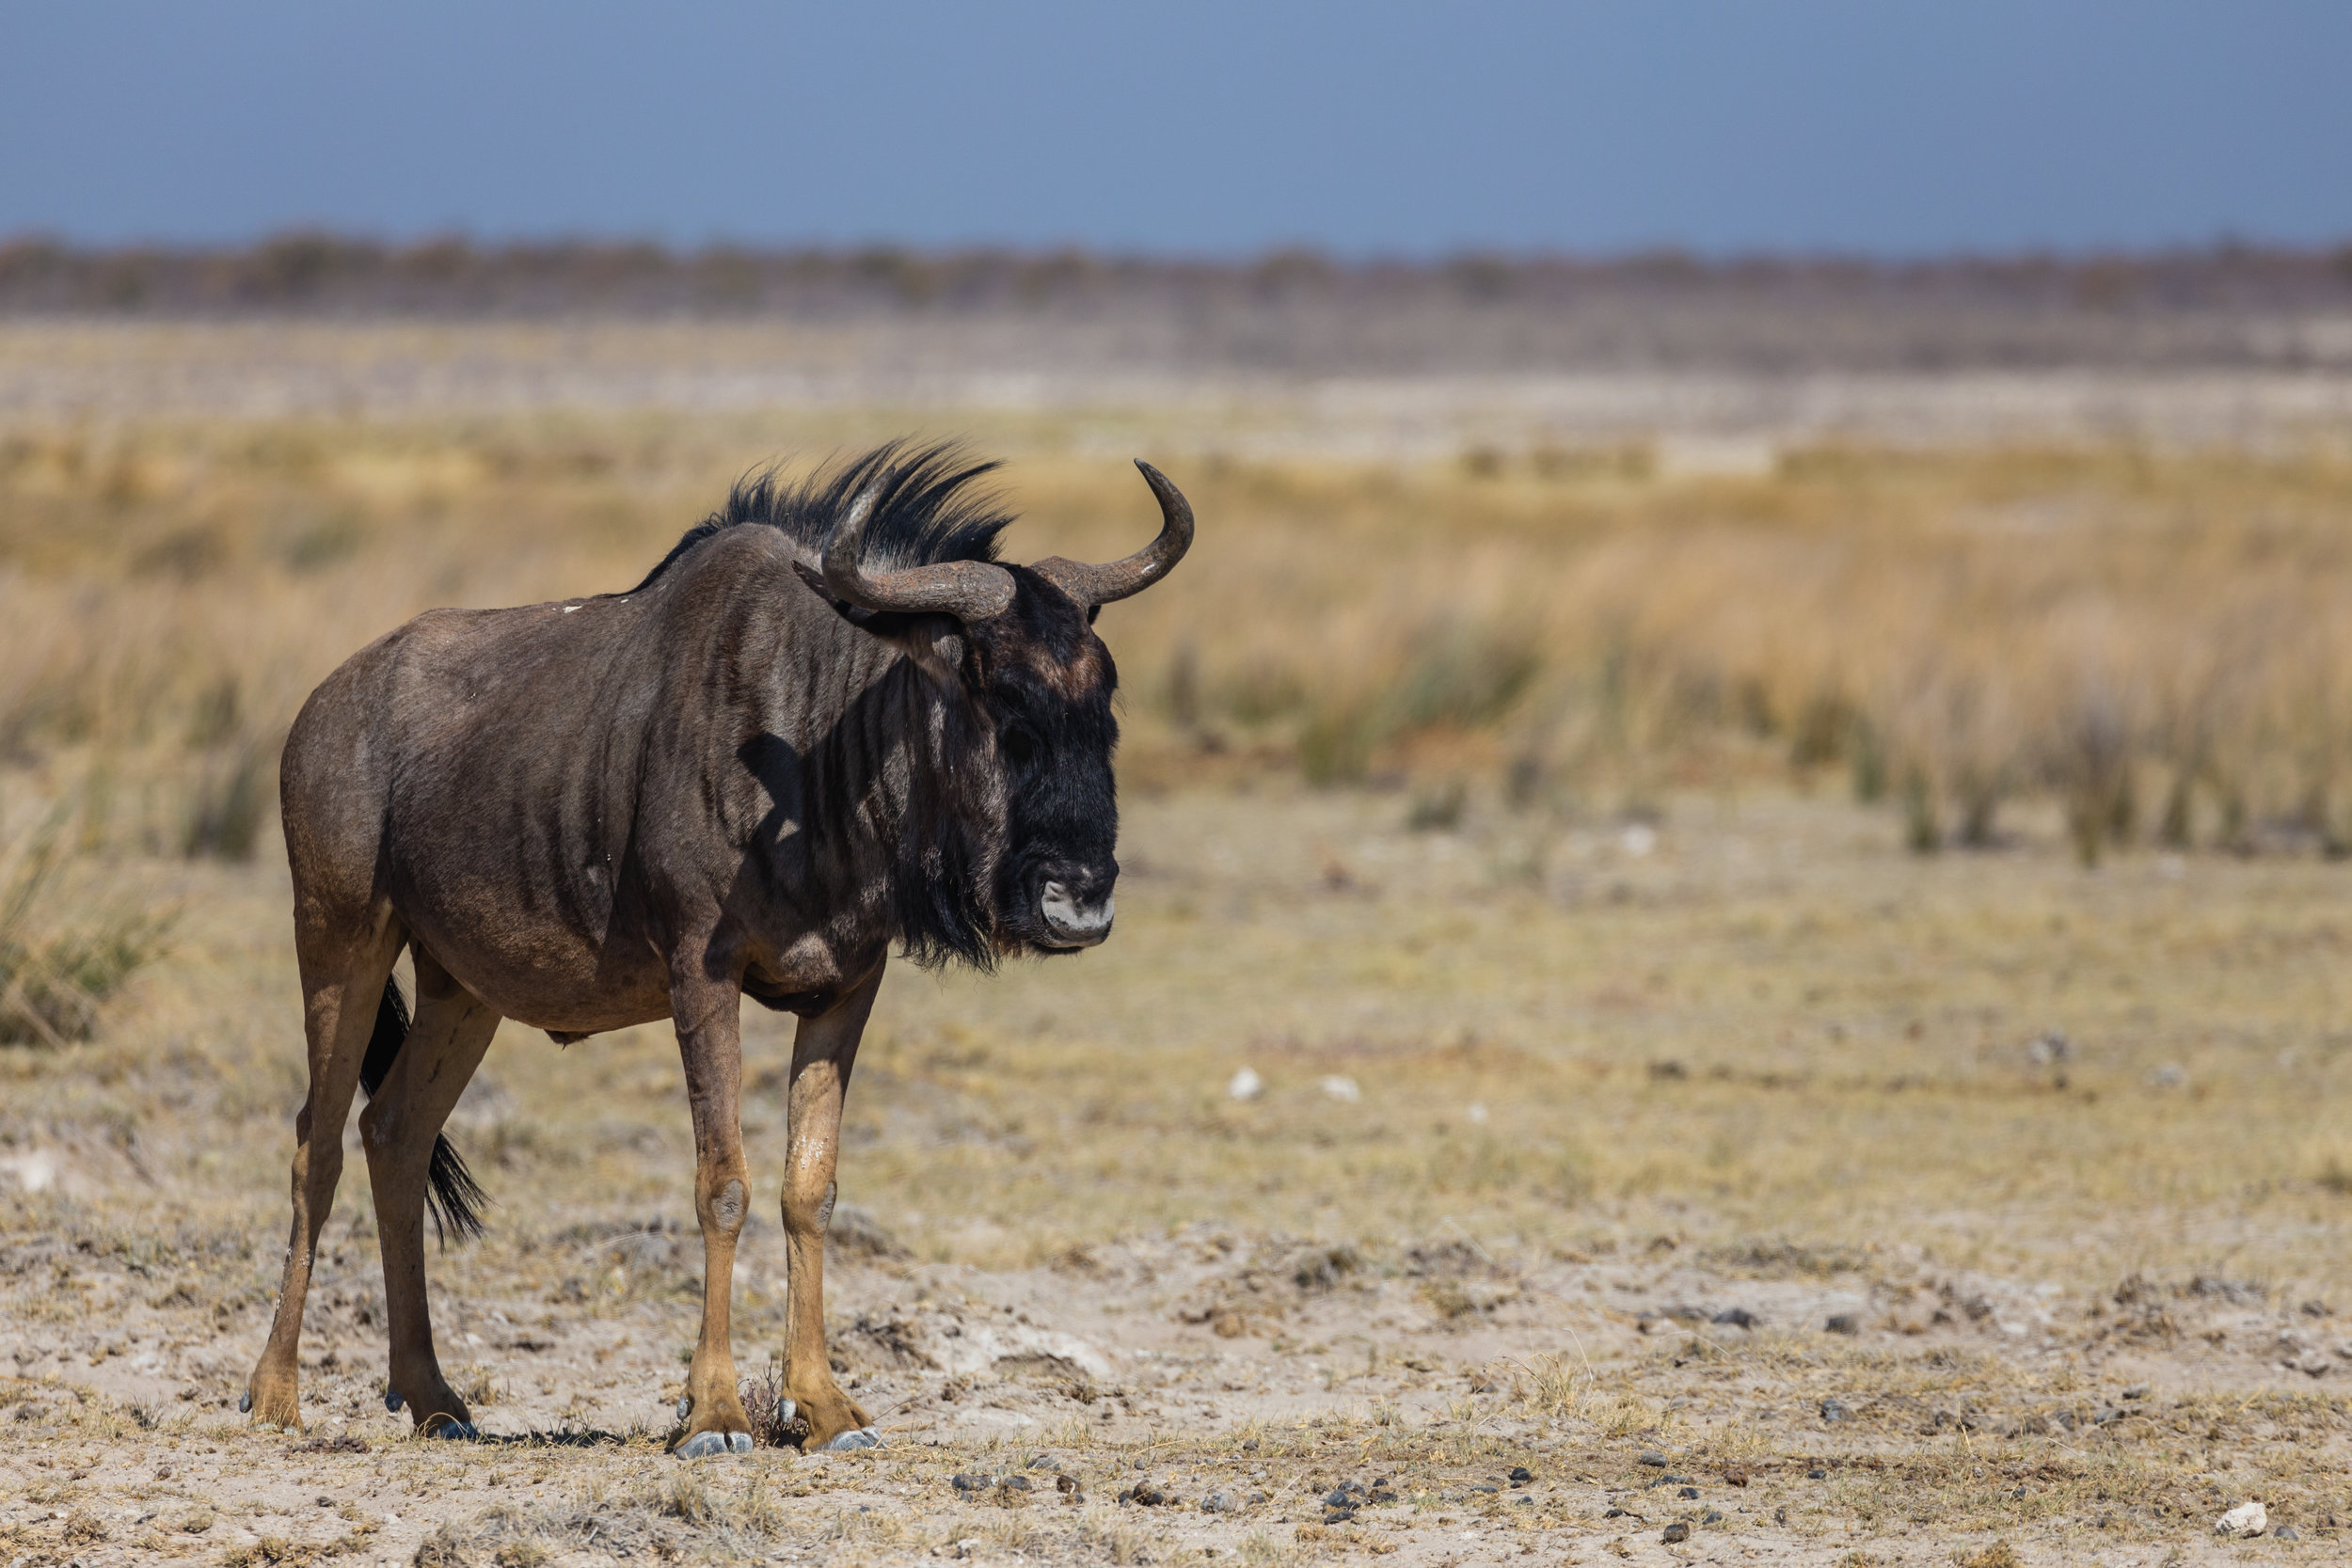 Wildebeest. Etosha, Namibia (Aug. 2019)